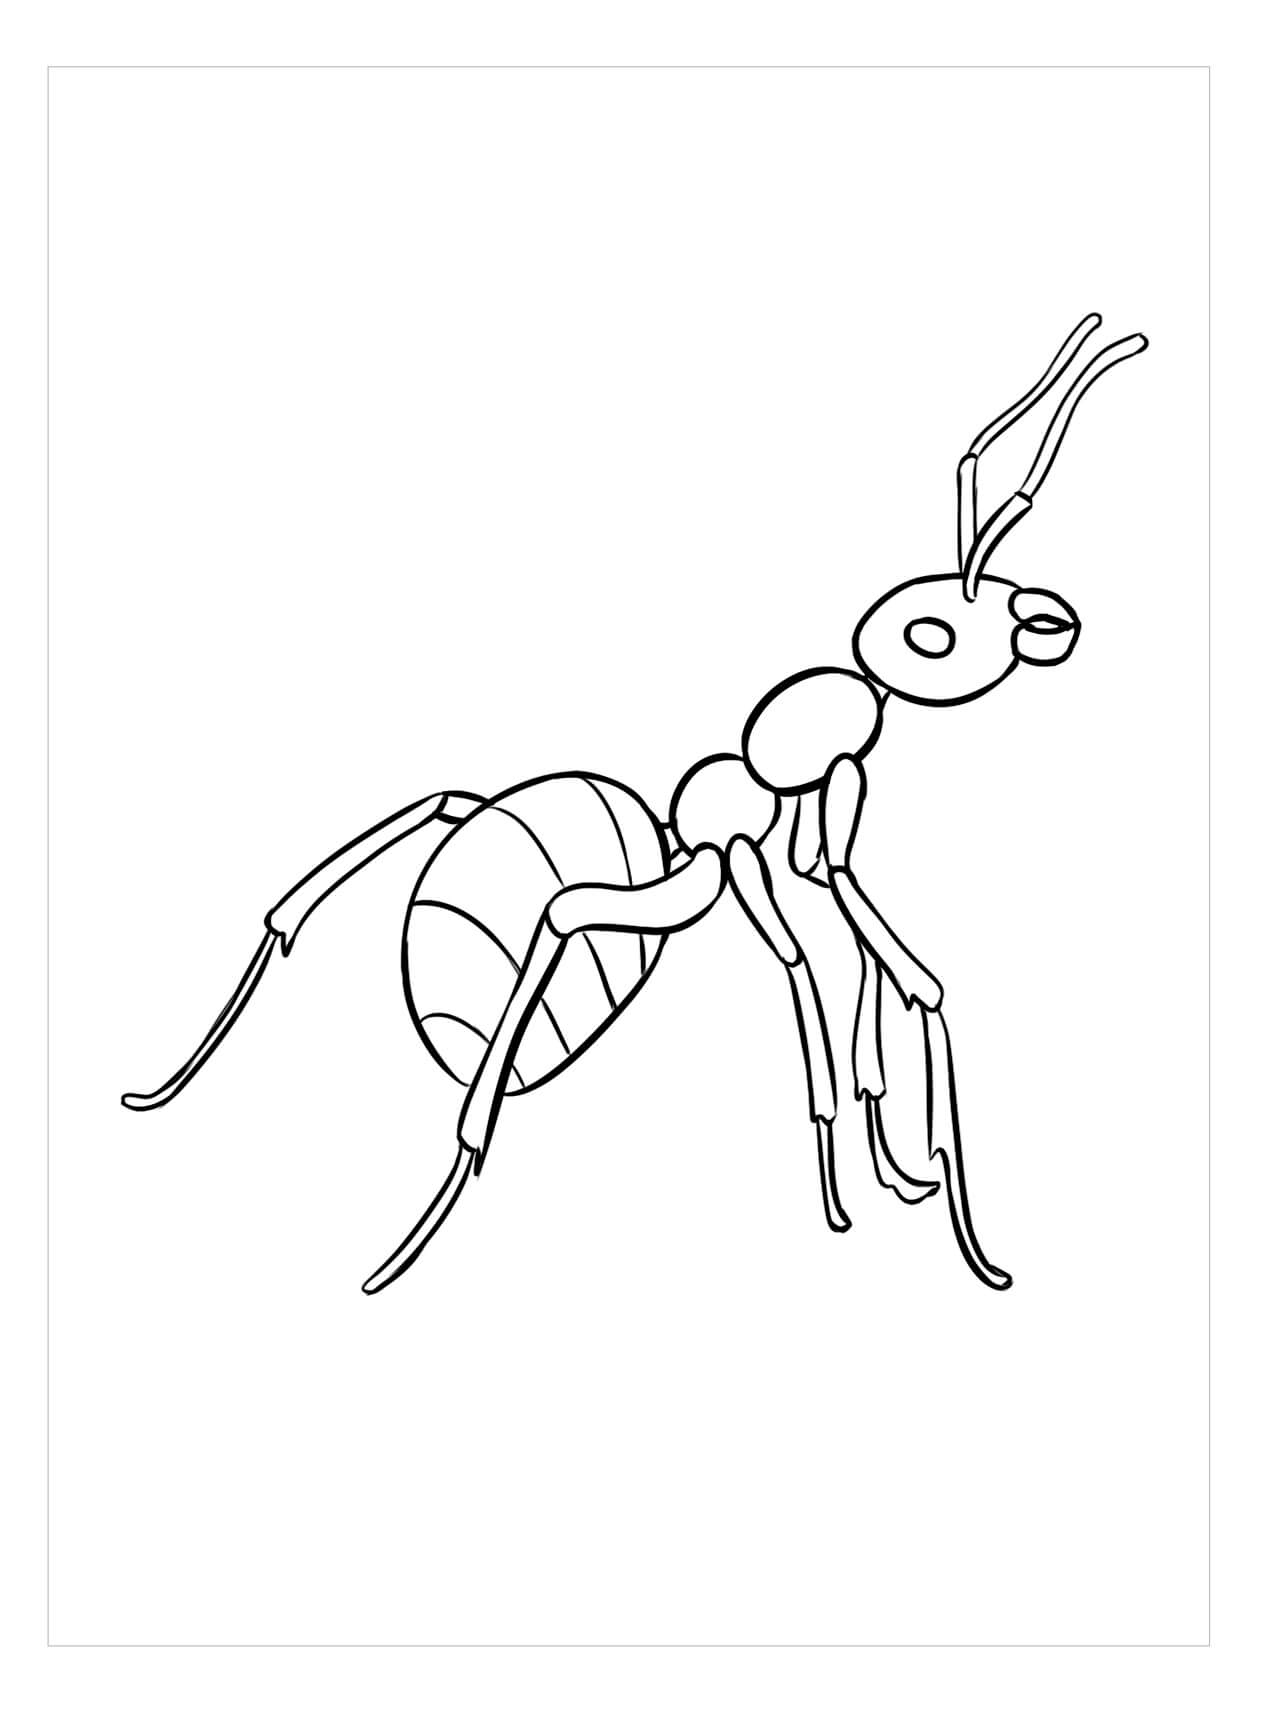 Imágenes gratis de Hormigas